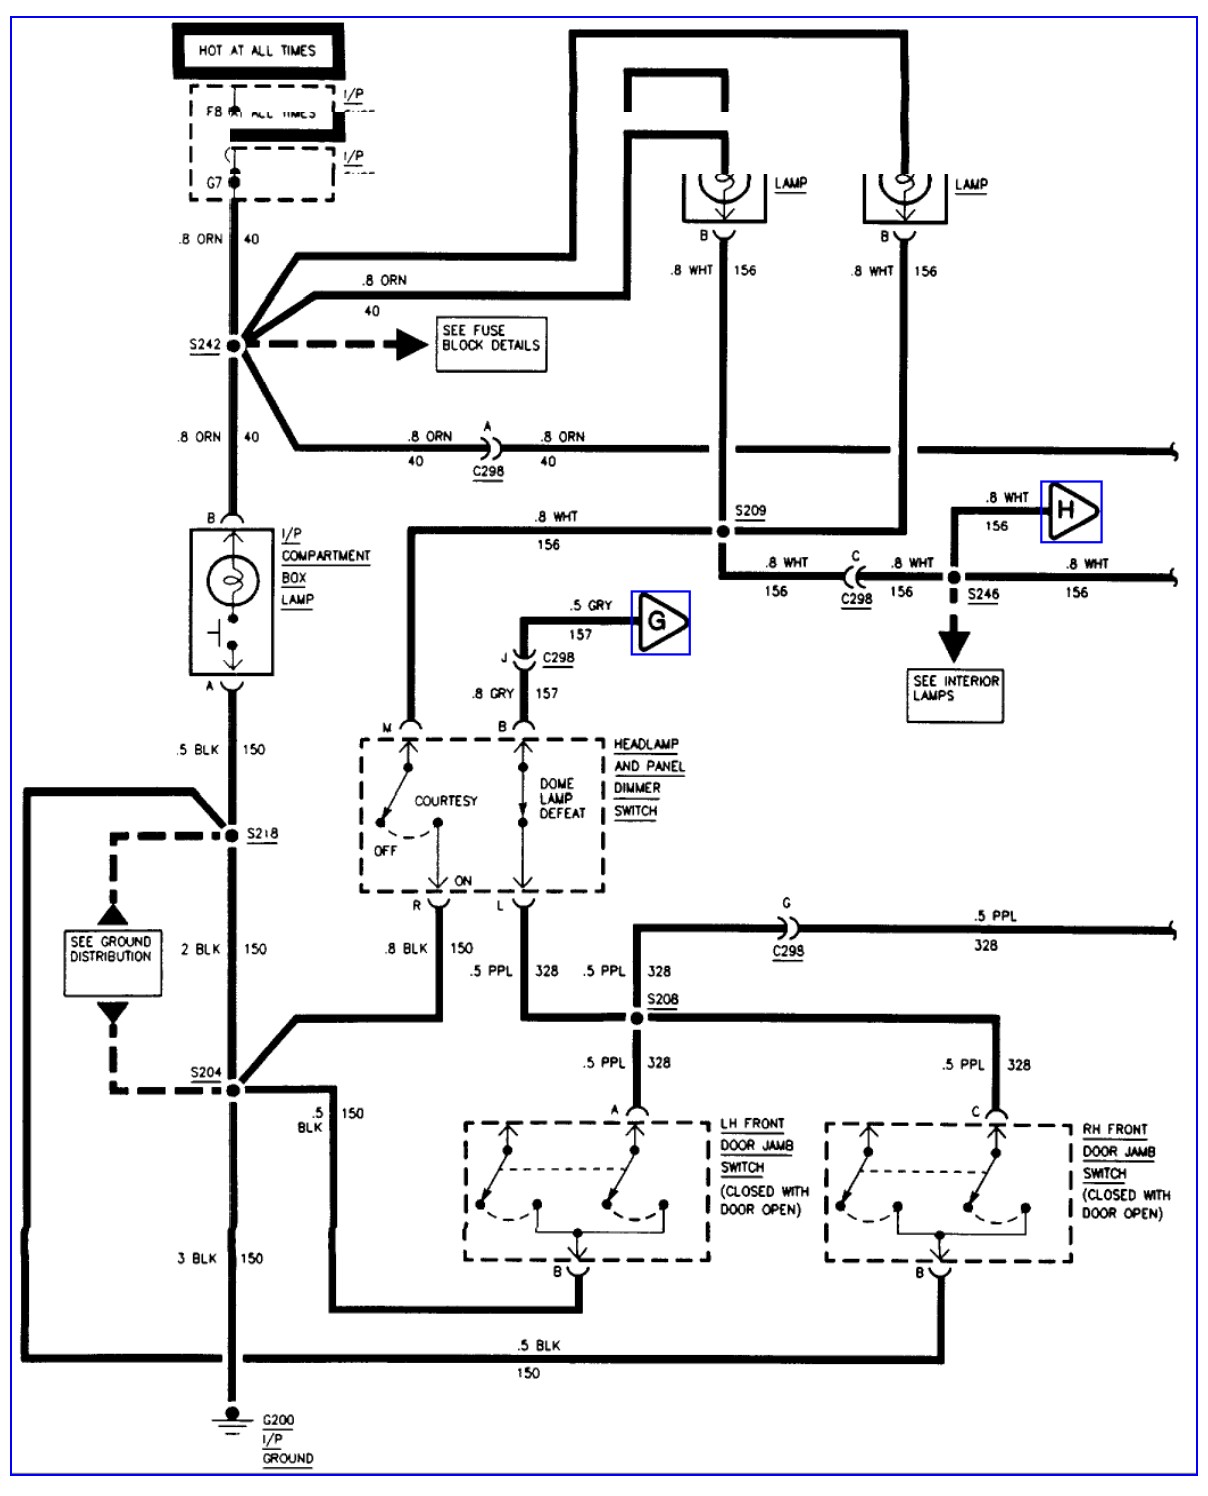 01 gmc savana wiring diagram wiring diagrams schematics 95 gmc radio wire schematics 95 gmc radio